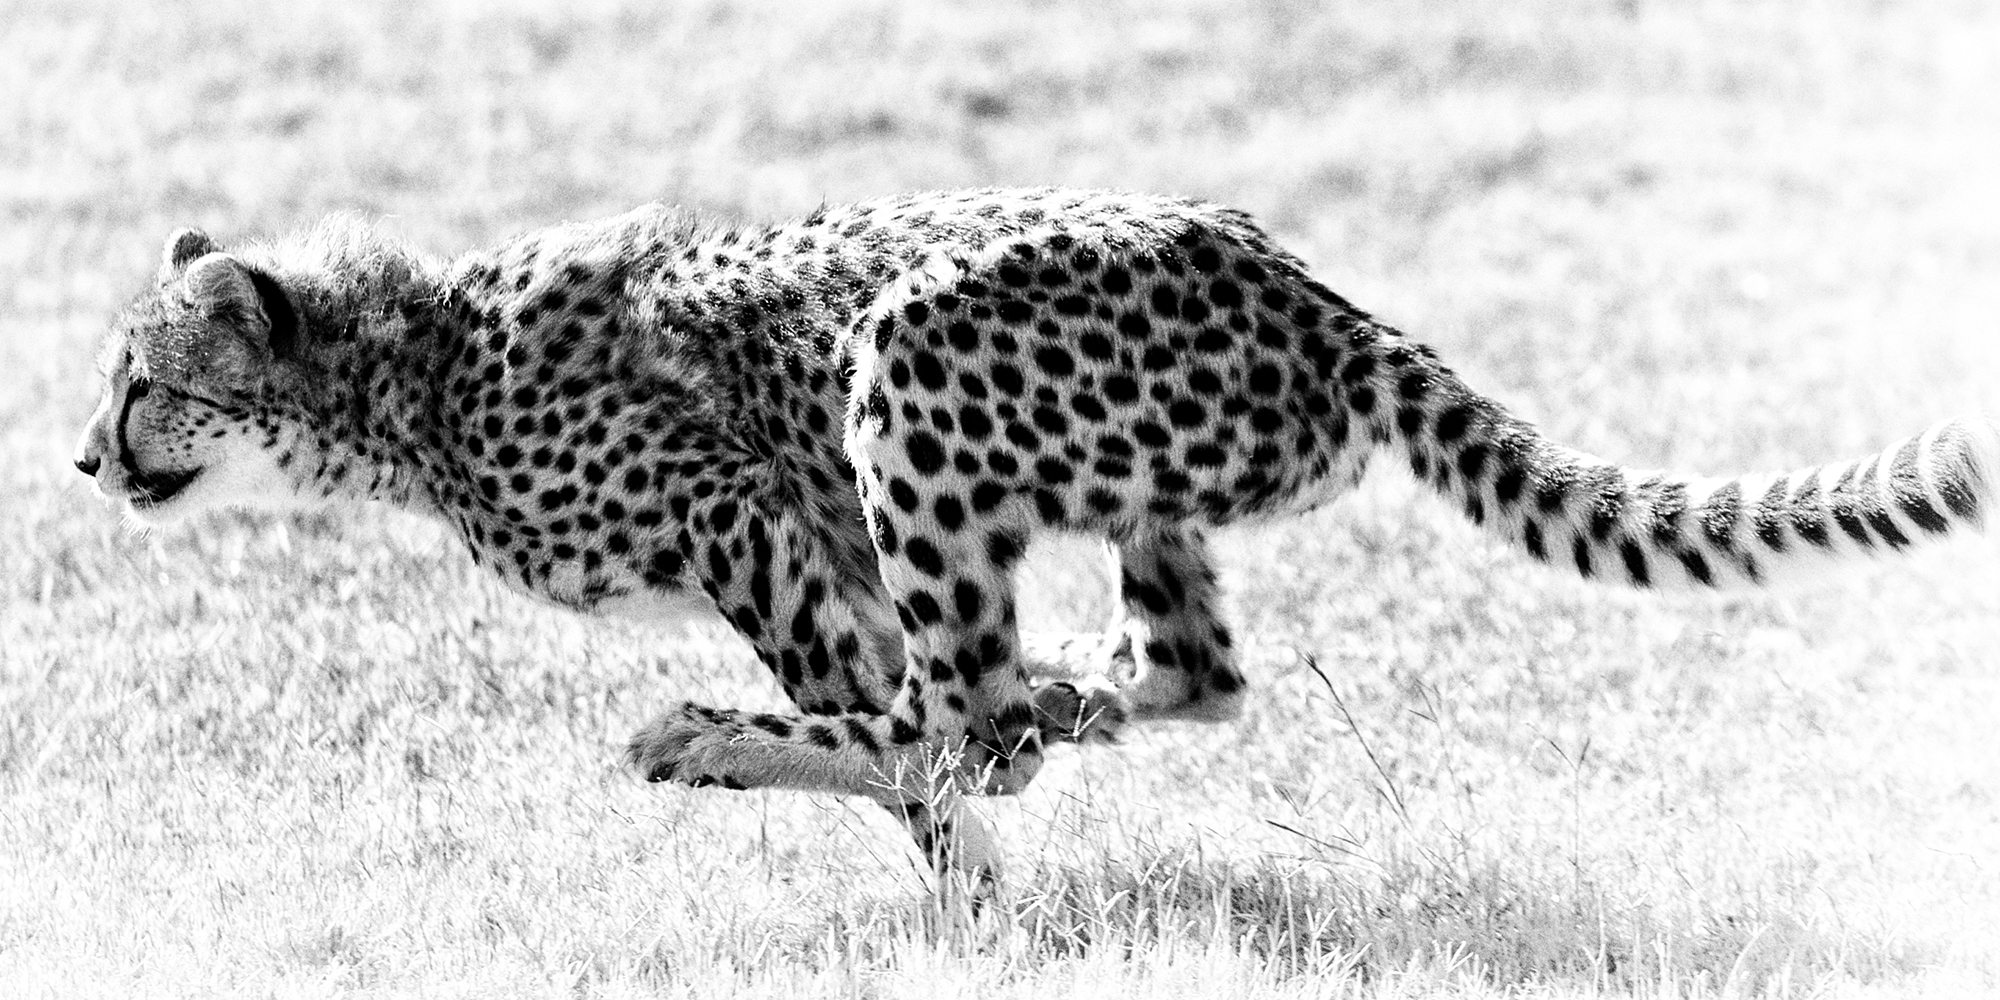 India cheetah deaths